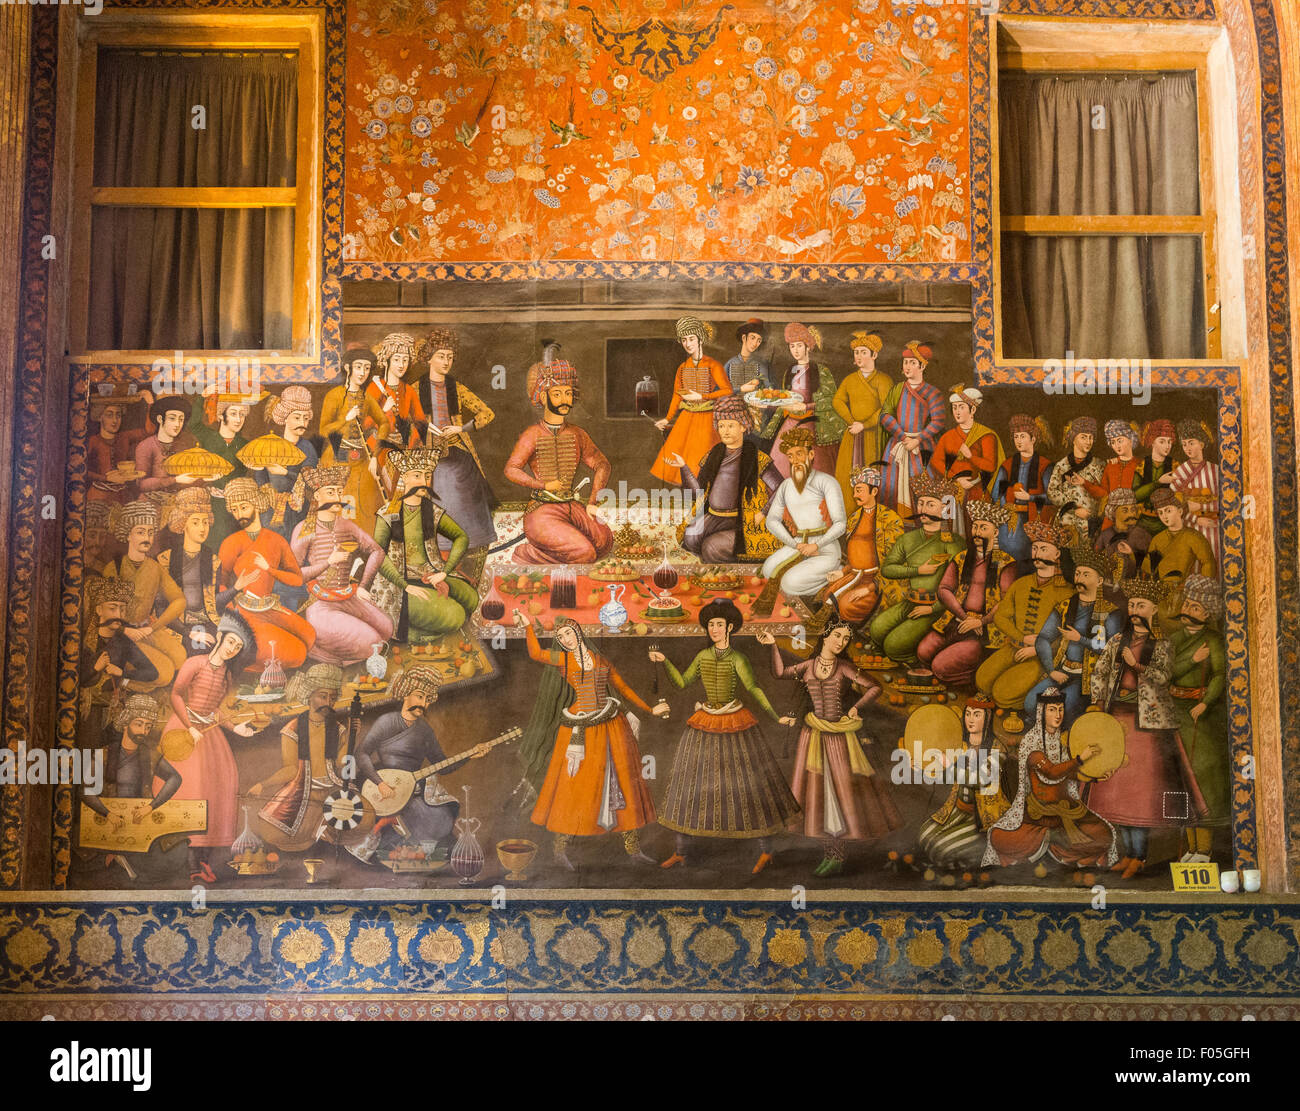 Peinture de Shah Abbas II et Nadr Muhammad Khan, Palais Chehel Sutun, Isfahan, Iran Banque D'Images